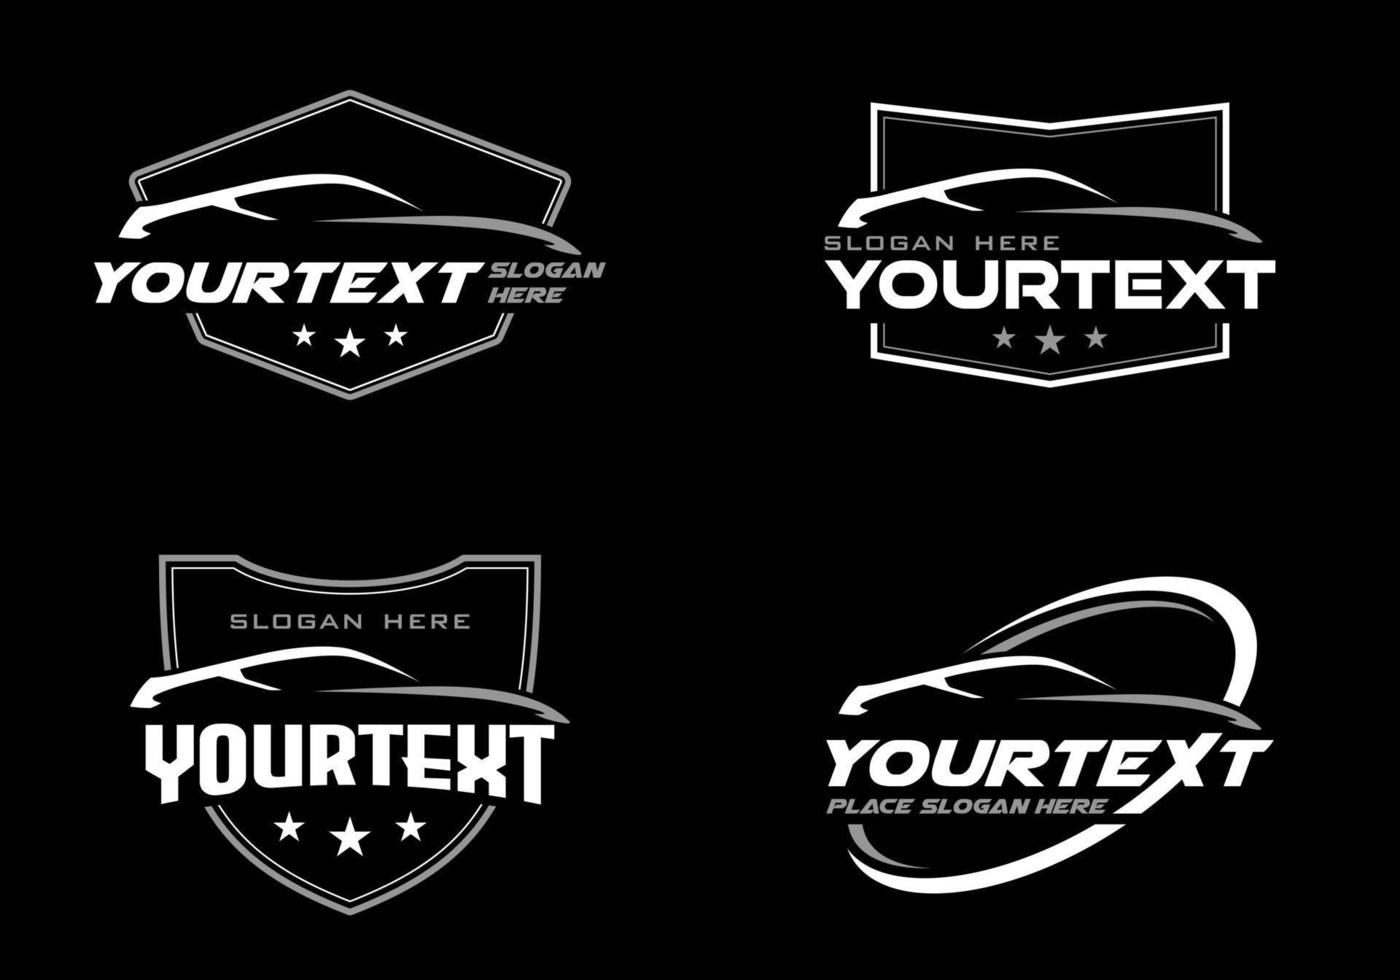 vektor abstrakt sportbil siluett logotyp uppsättning